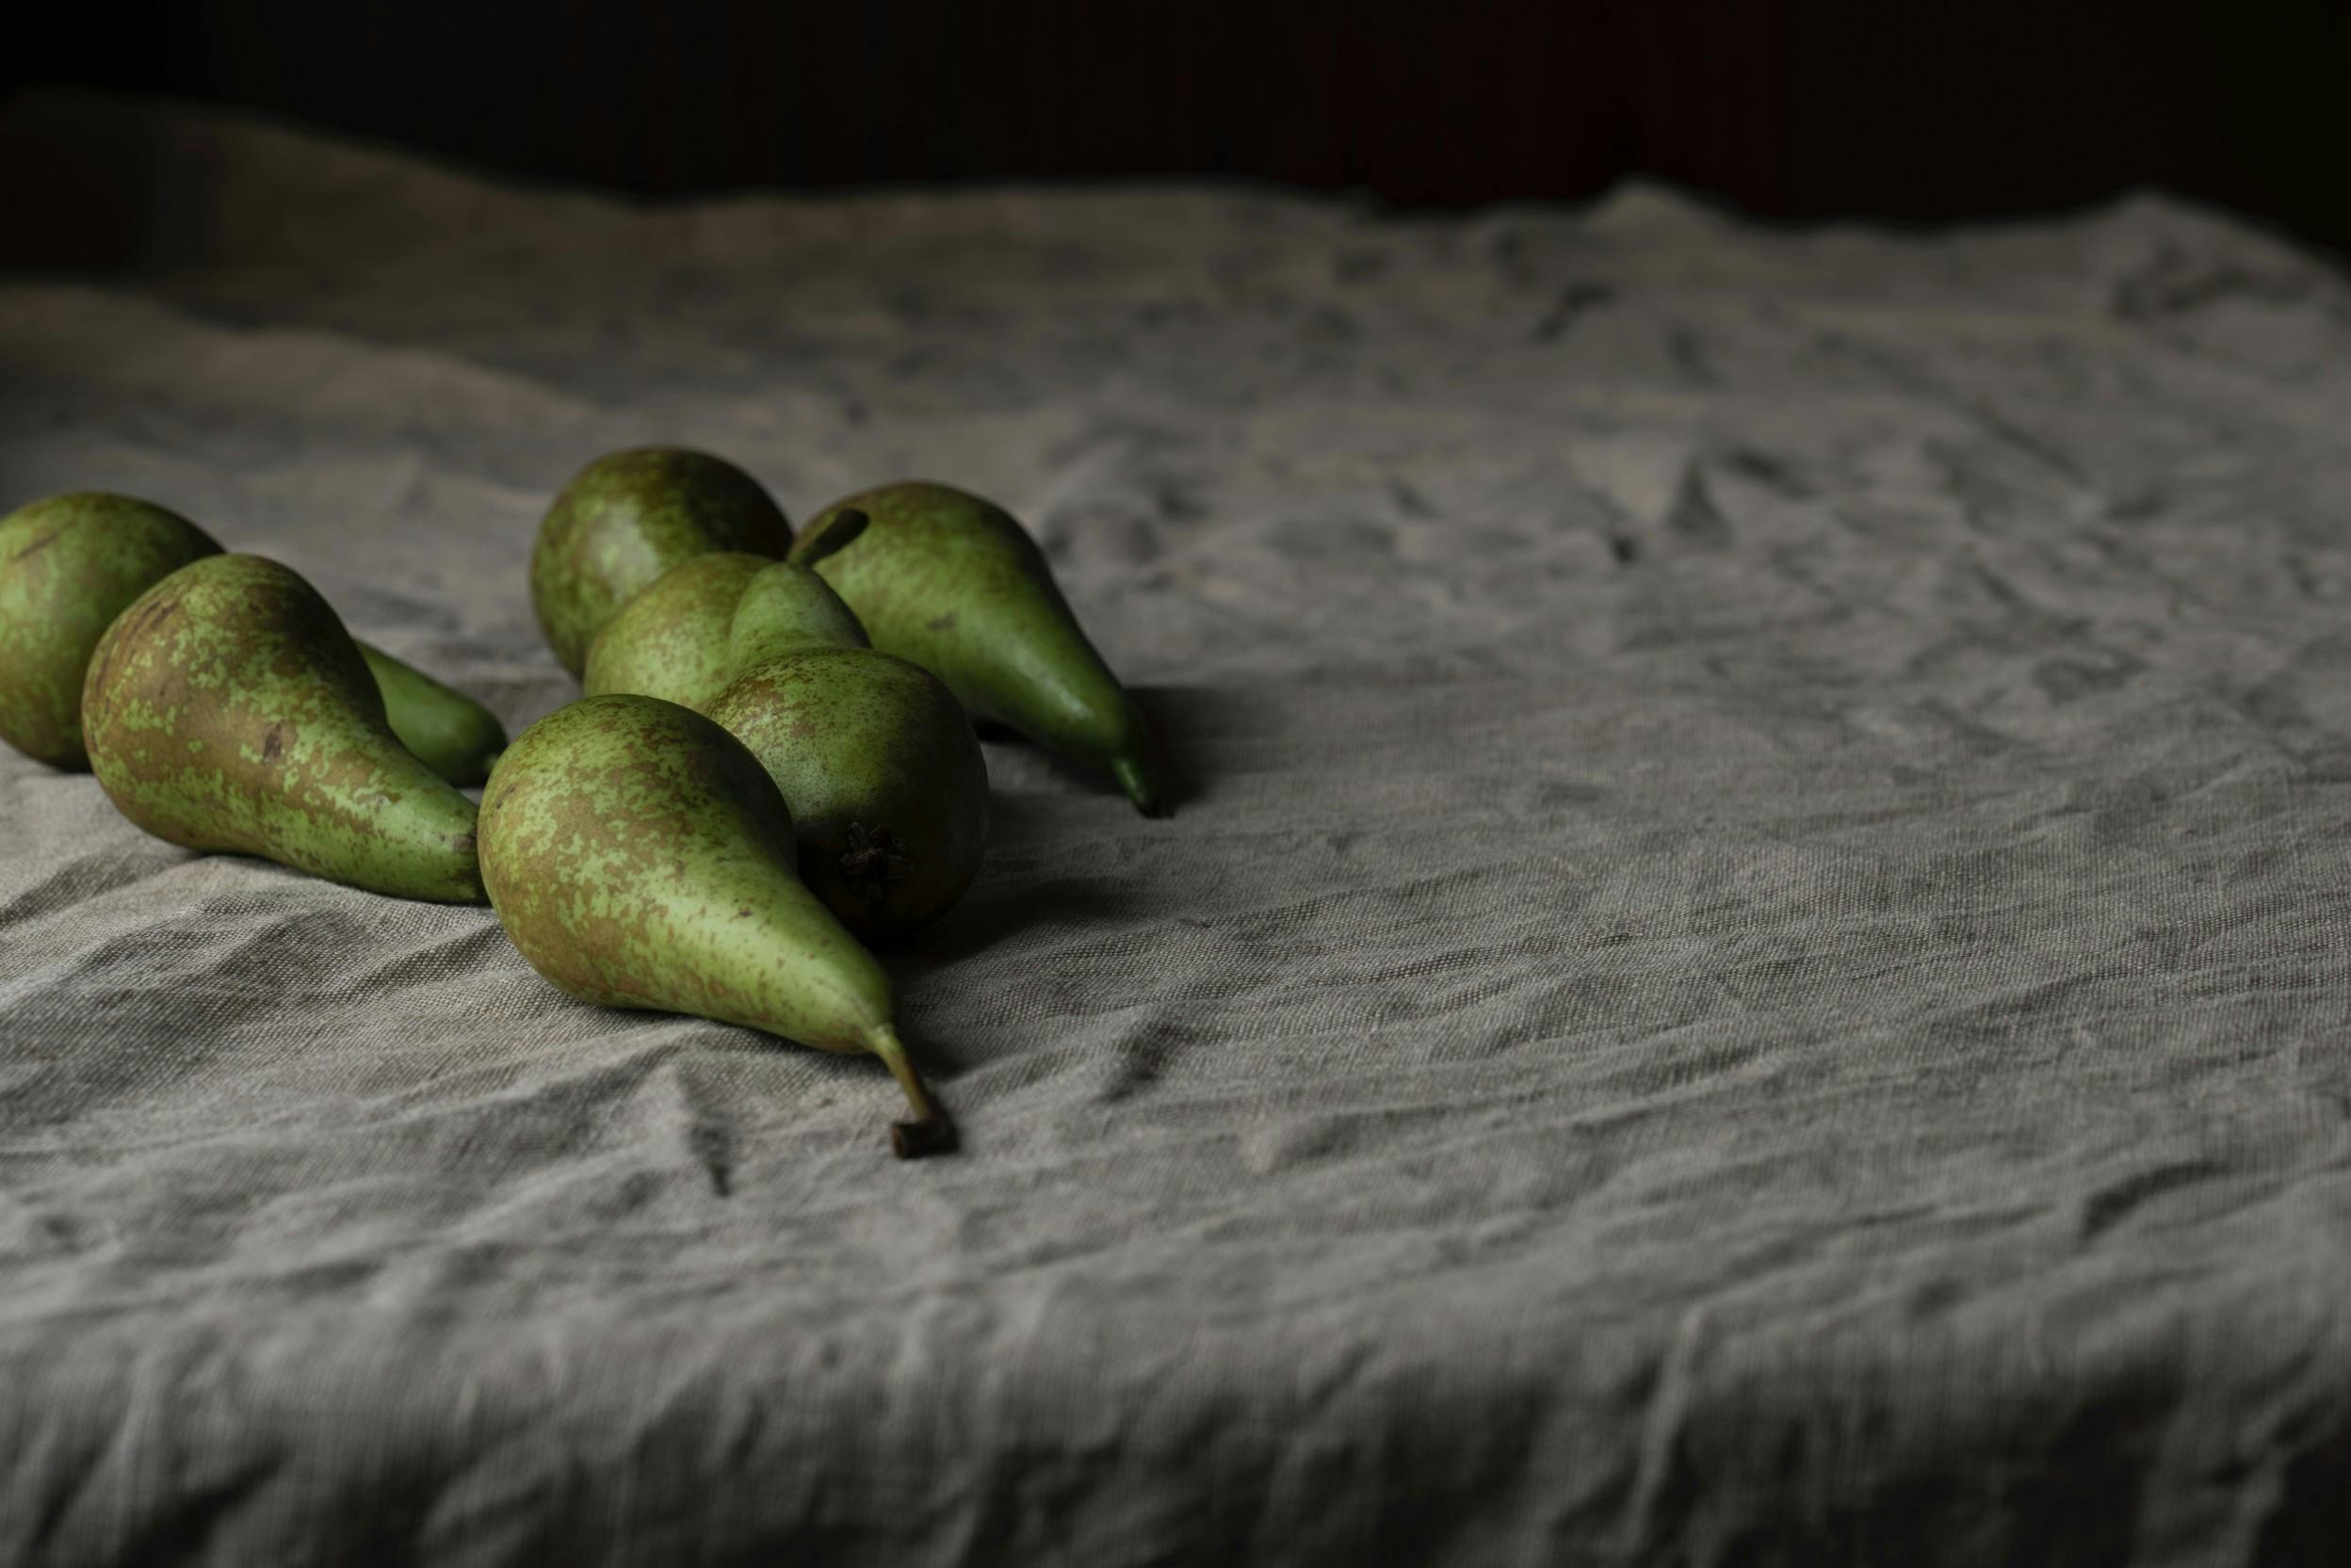 Bett mit Bettwäsche in Grau und grüne Birnen drauf (links). Bild: Joanna Kosinska, aus Unsplash